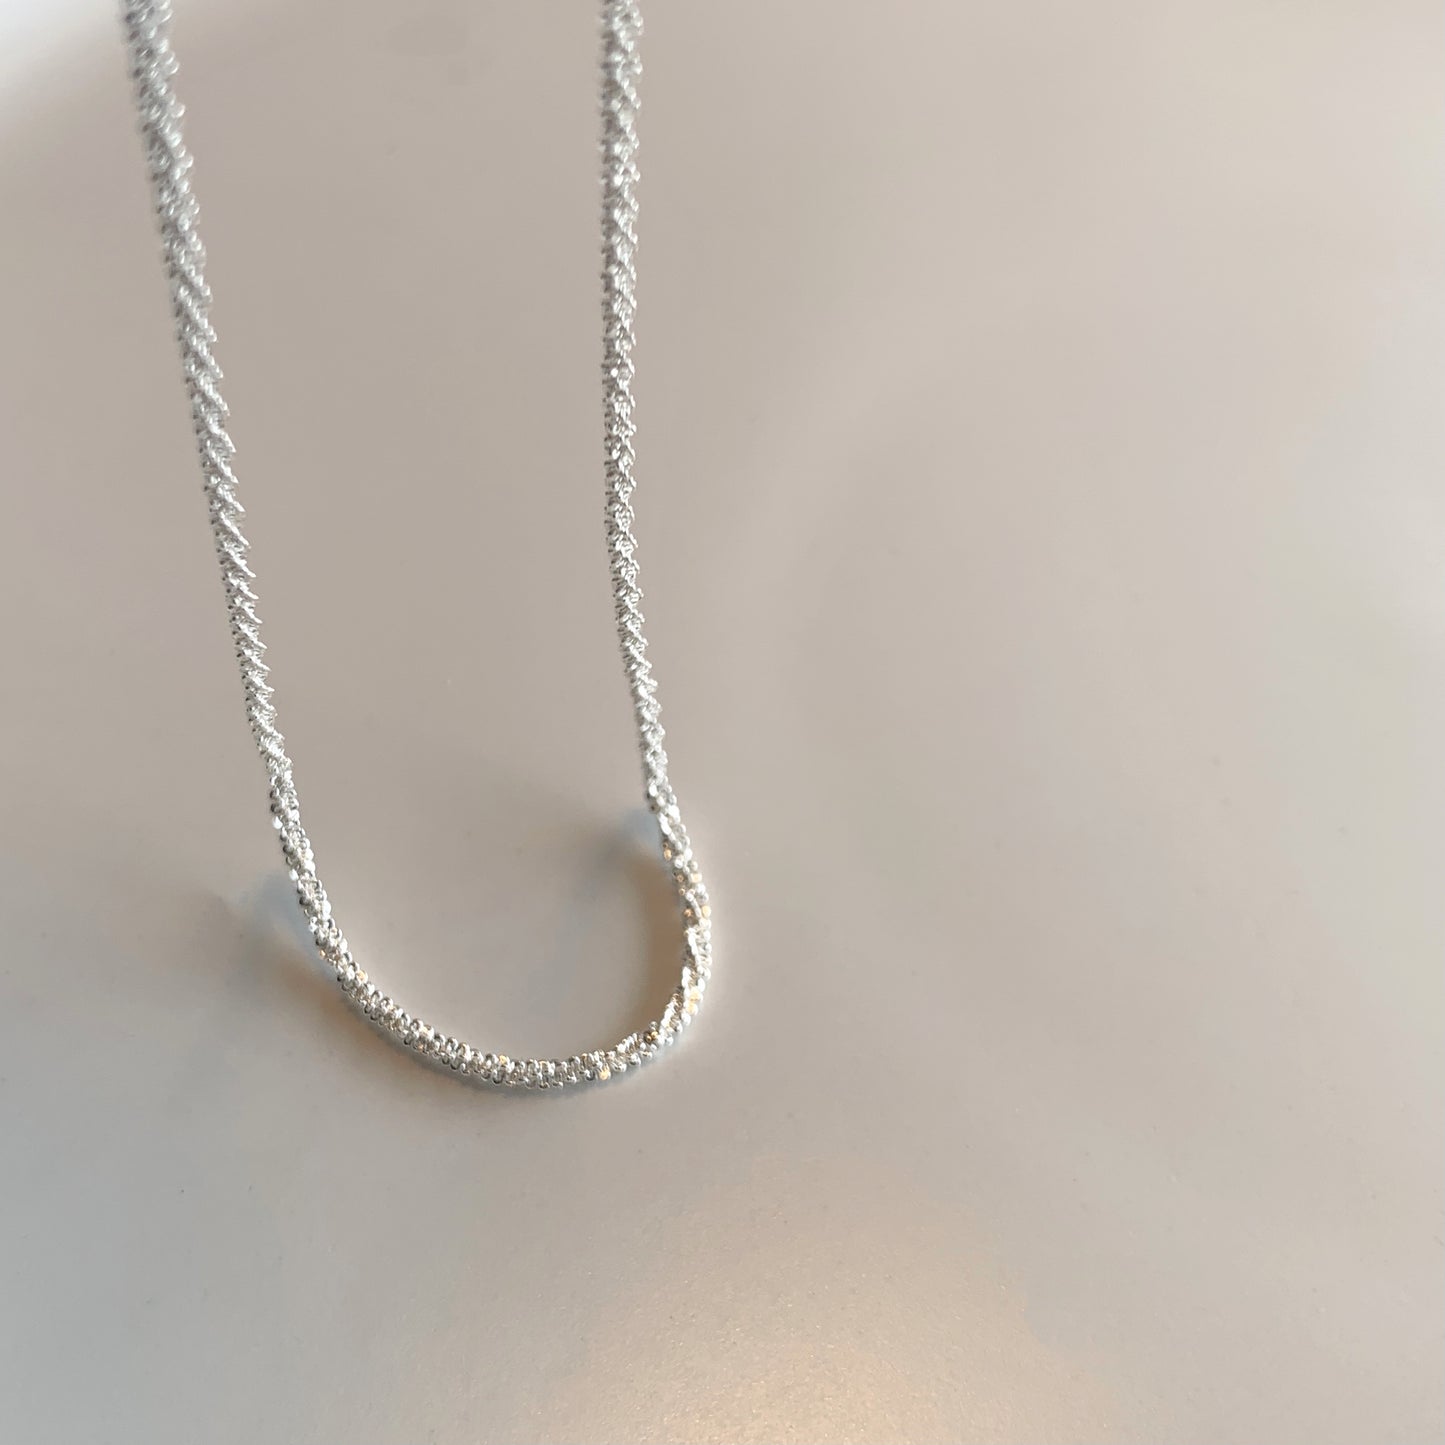 Minimalistic Silver Chain Necklace